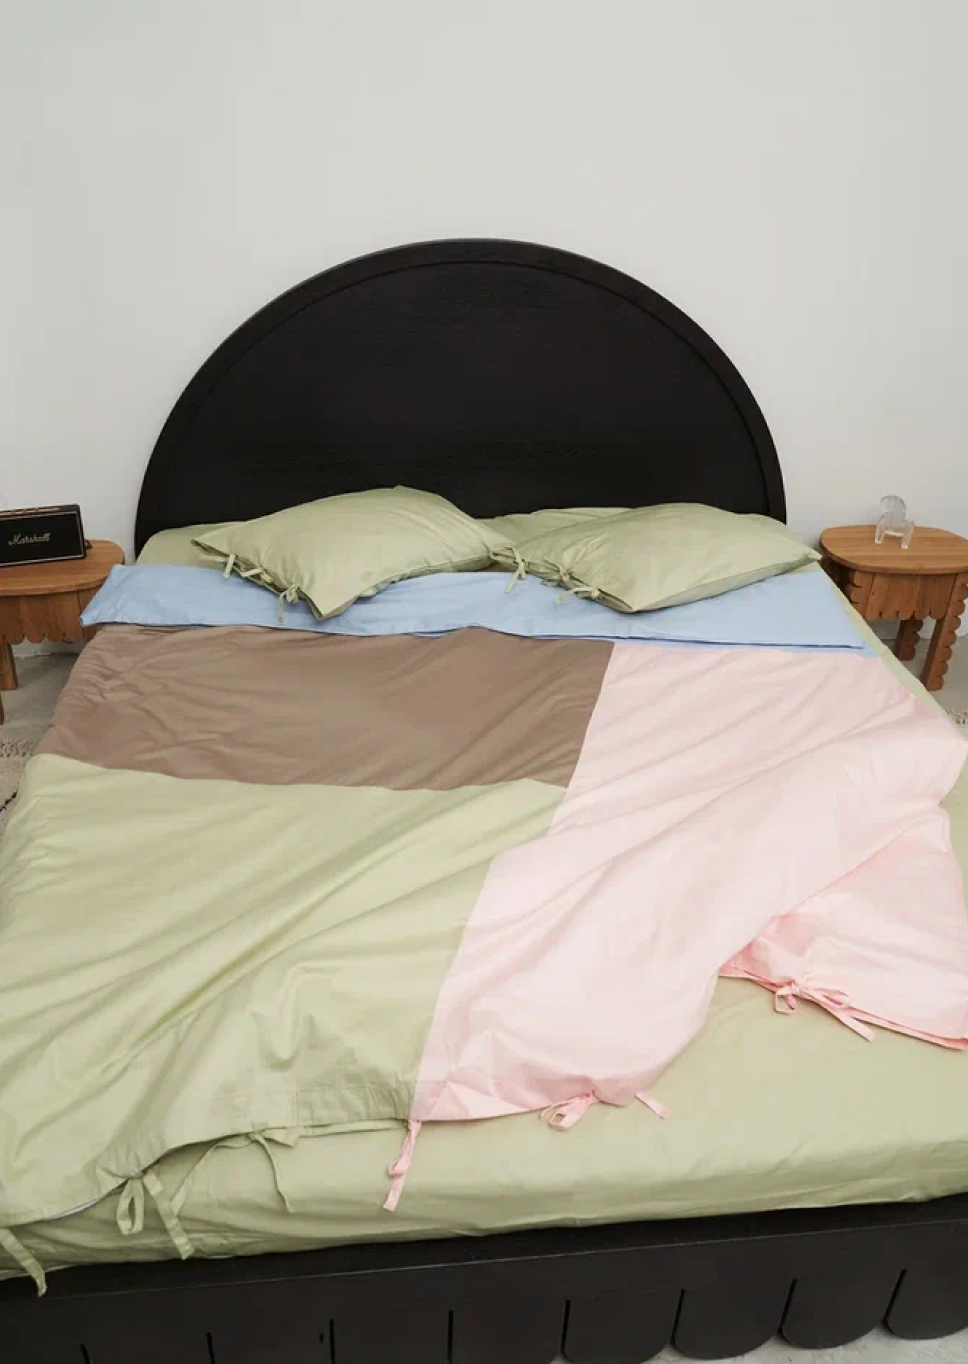 Как создается эстетичная «одежда» для кровати: история проекта NBBC (фото 5)